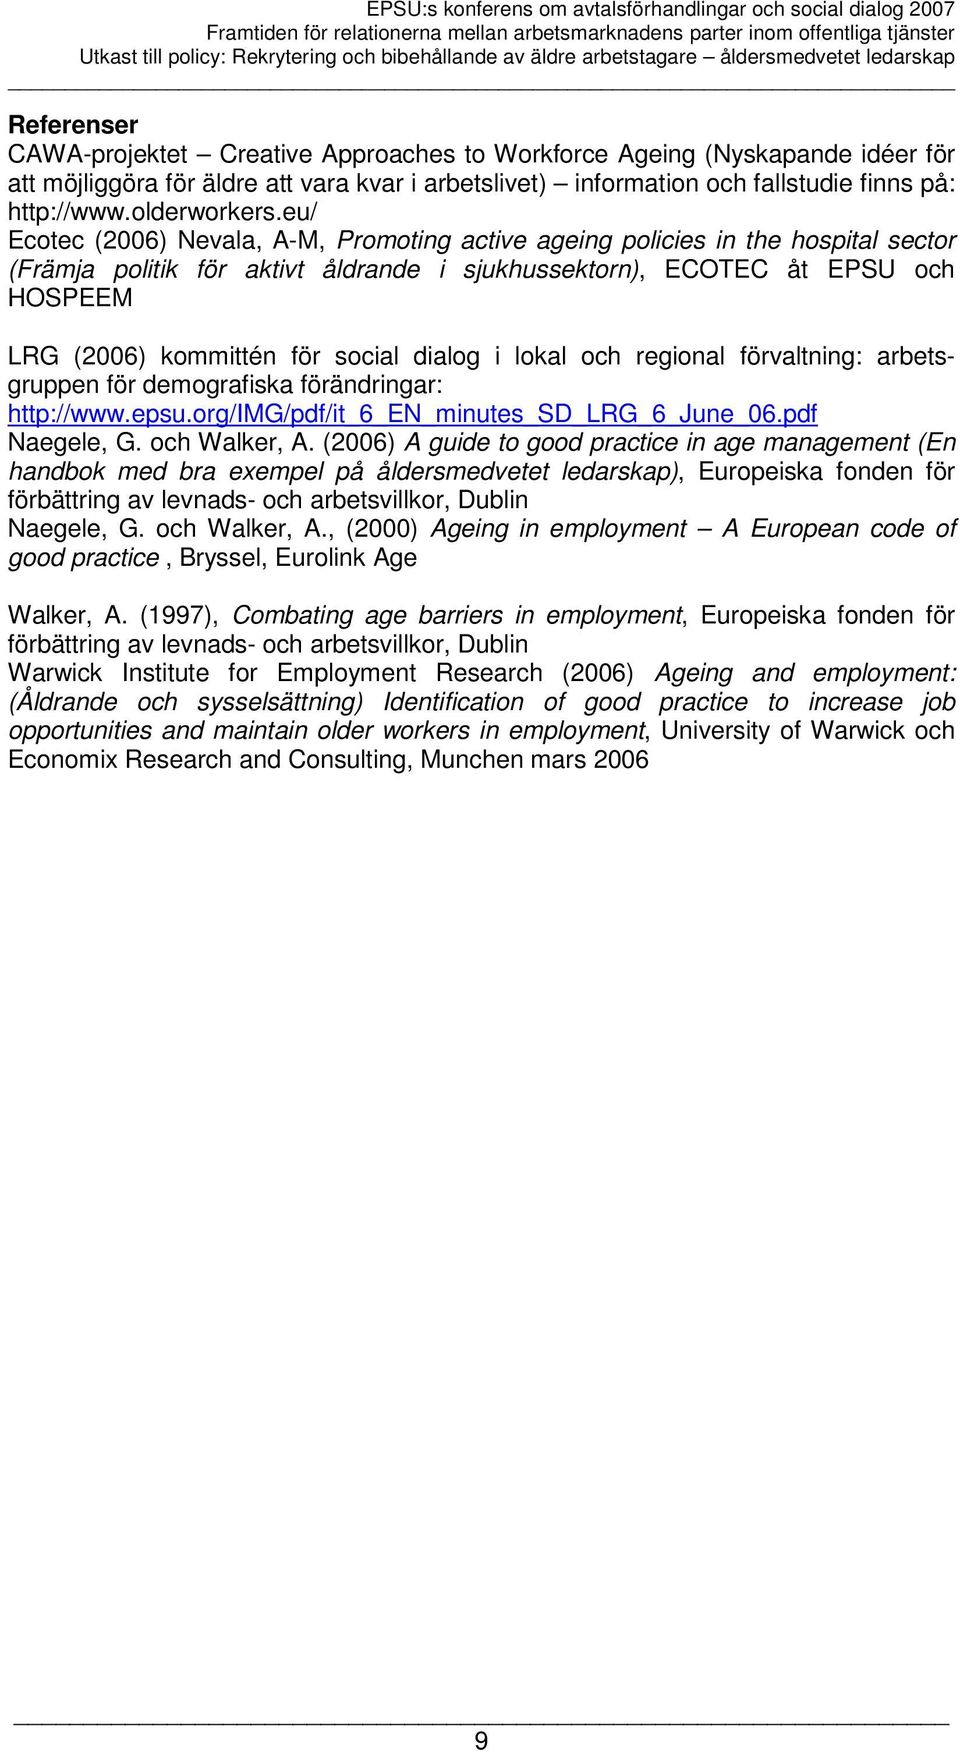 eu/ Ecotec (2006) Nevala, A-M, Promoting active ageing policies in the hospital sector (Främja politik för aktivt åldrande i sjukhussektorn), ECOTEC åt EPSU och HOSPEEM LRG (2006) kommittén för